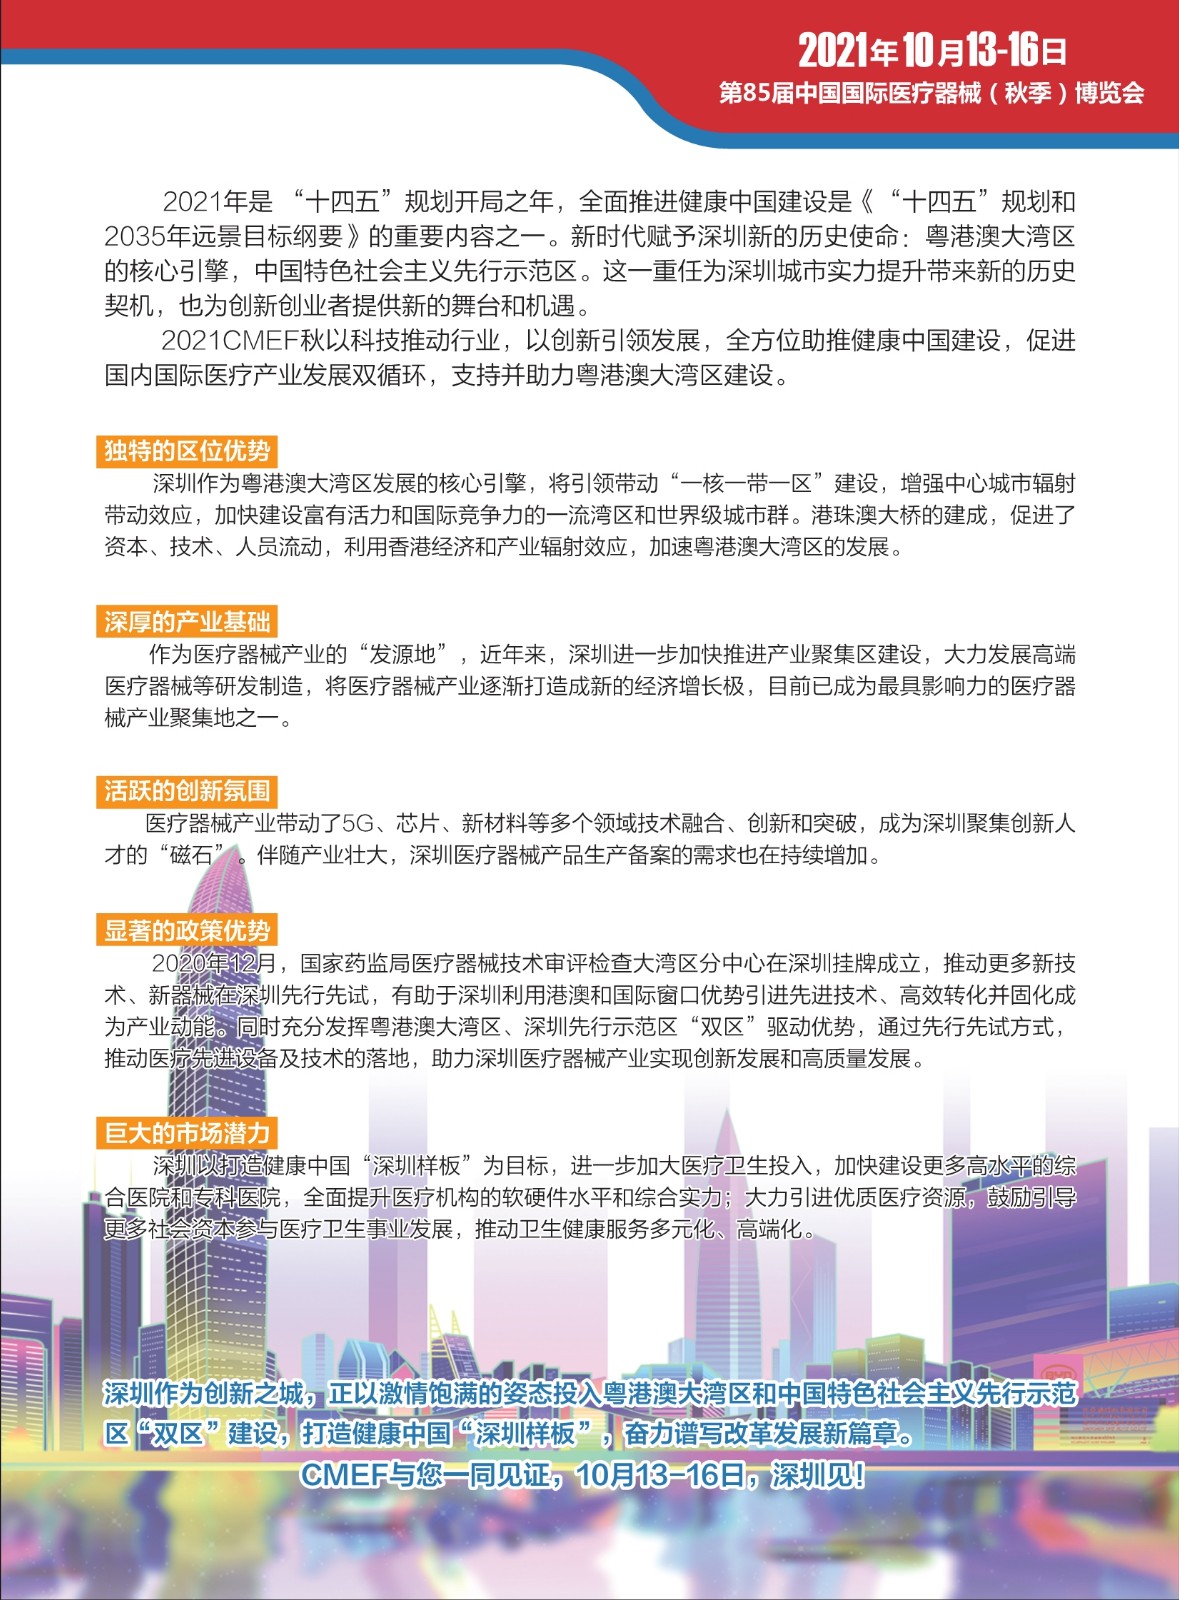 中国国际医疗器械展览会 CMEF